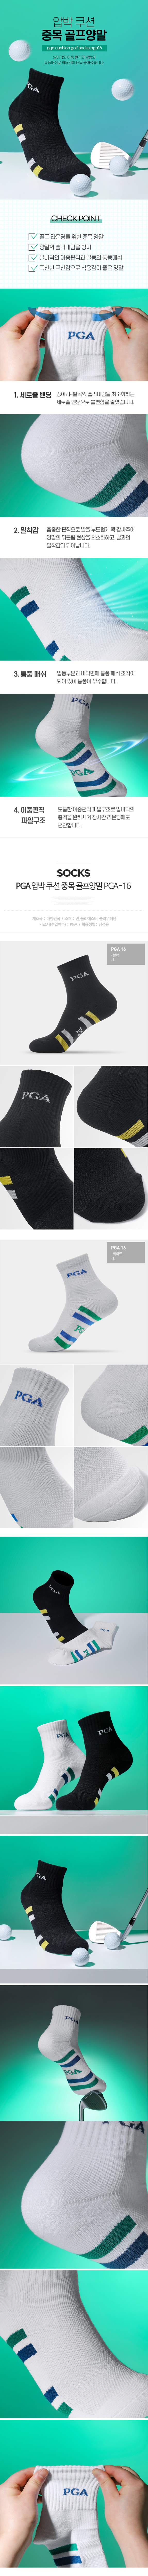 pga_cushion_golf_socks_PGA16_21.jpg